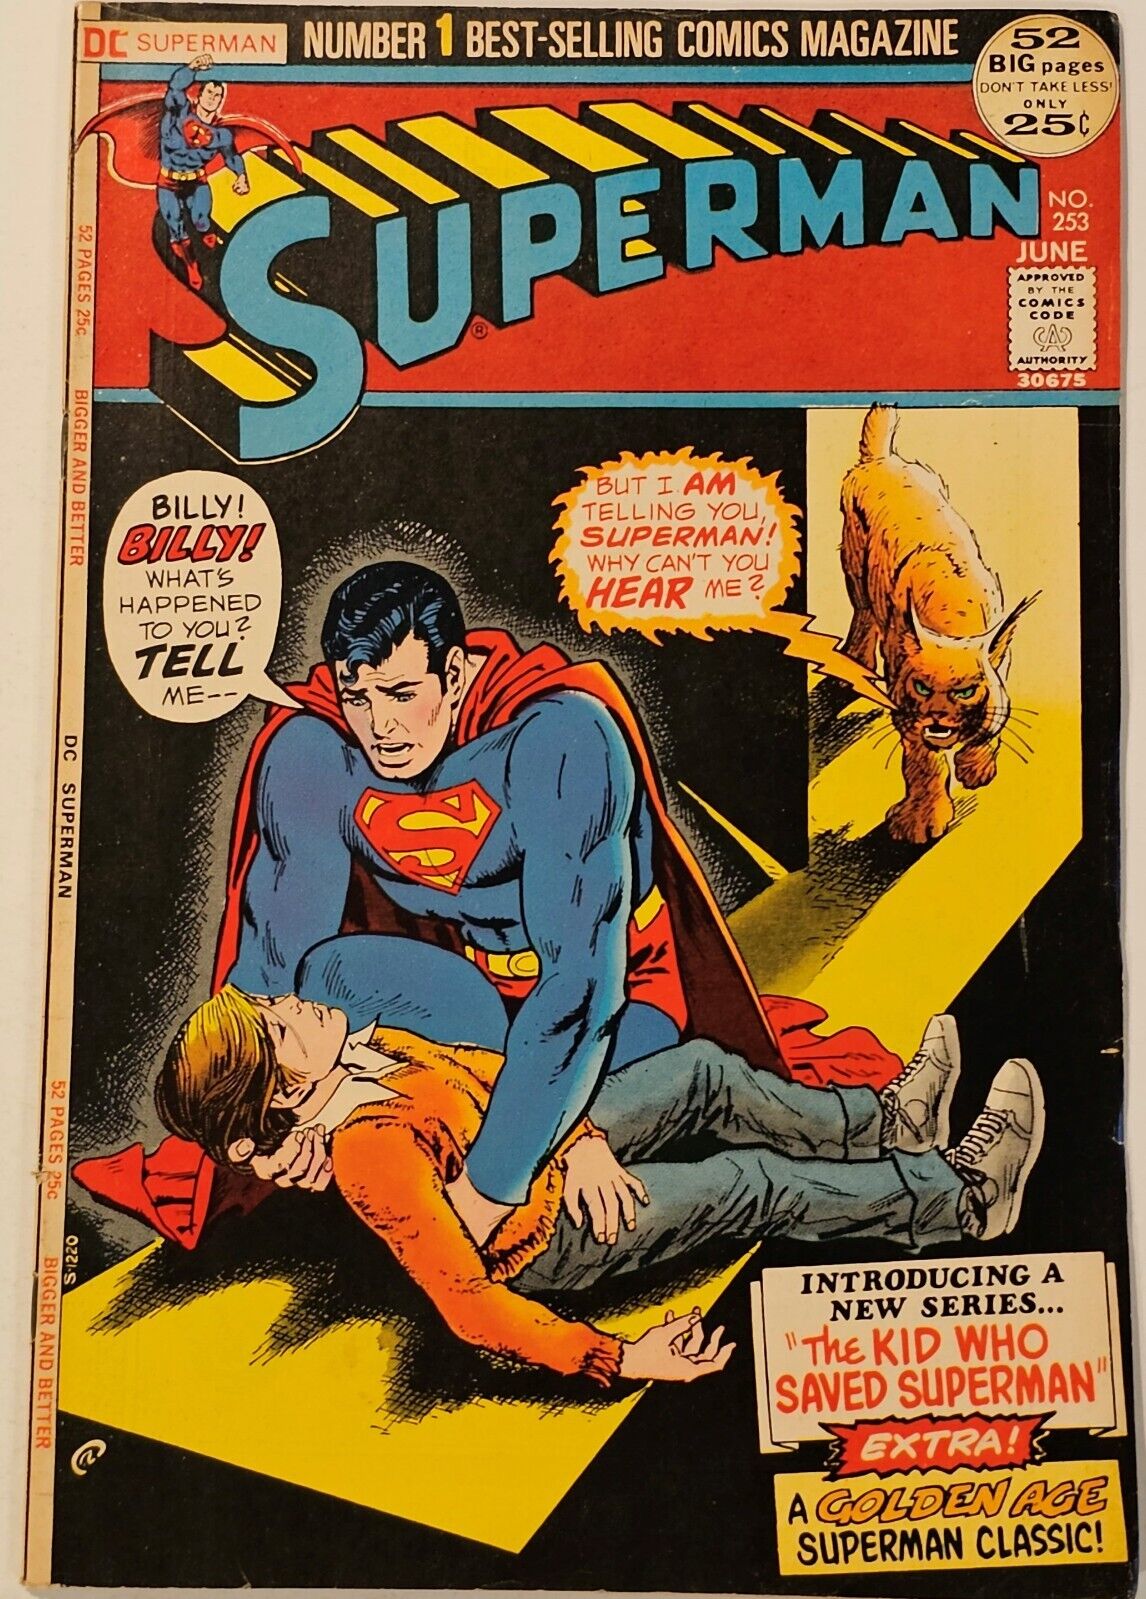 Superman #253 - June 1972 - Complete Higher Grade - Very Nice